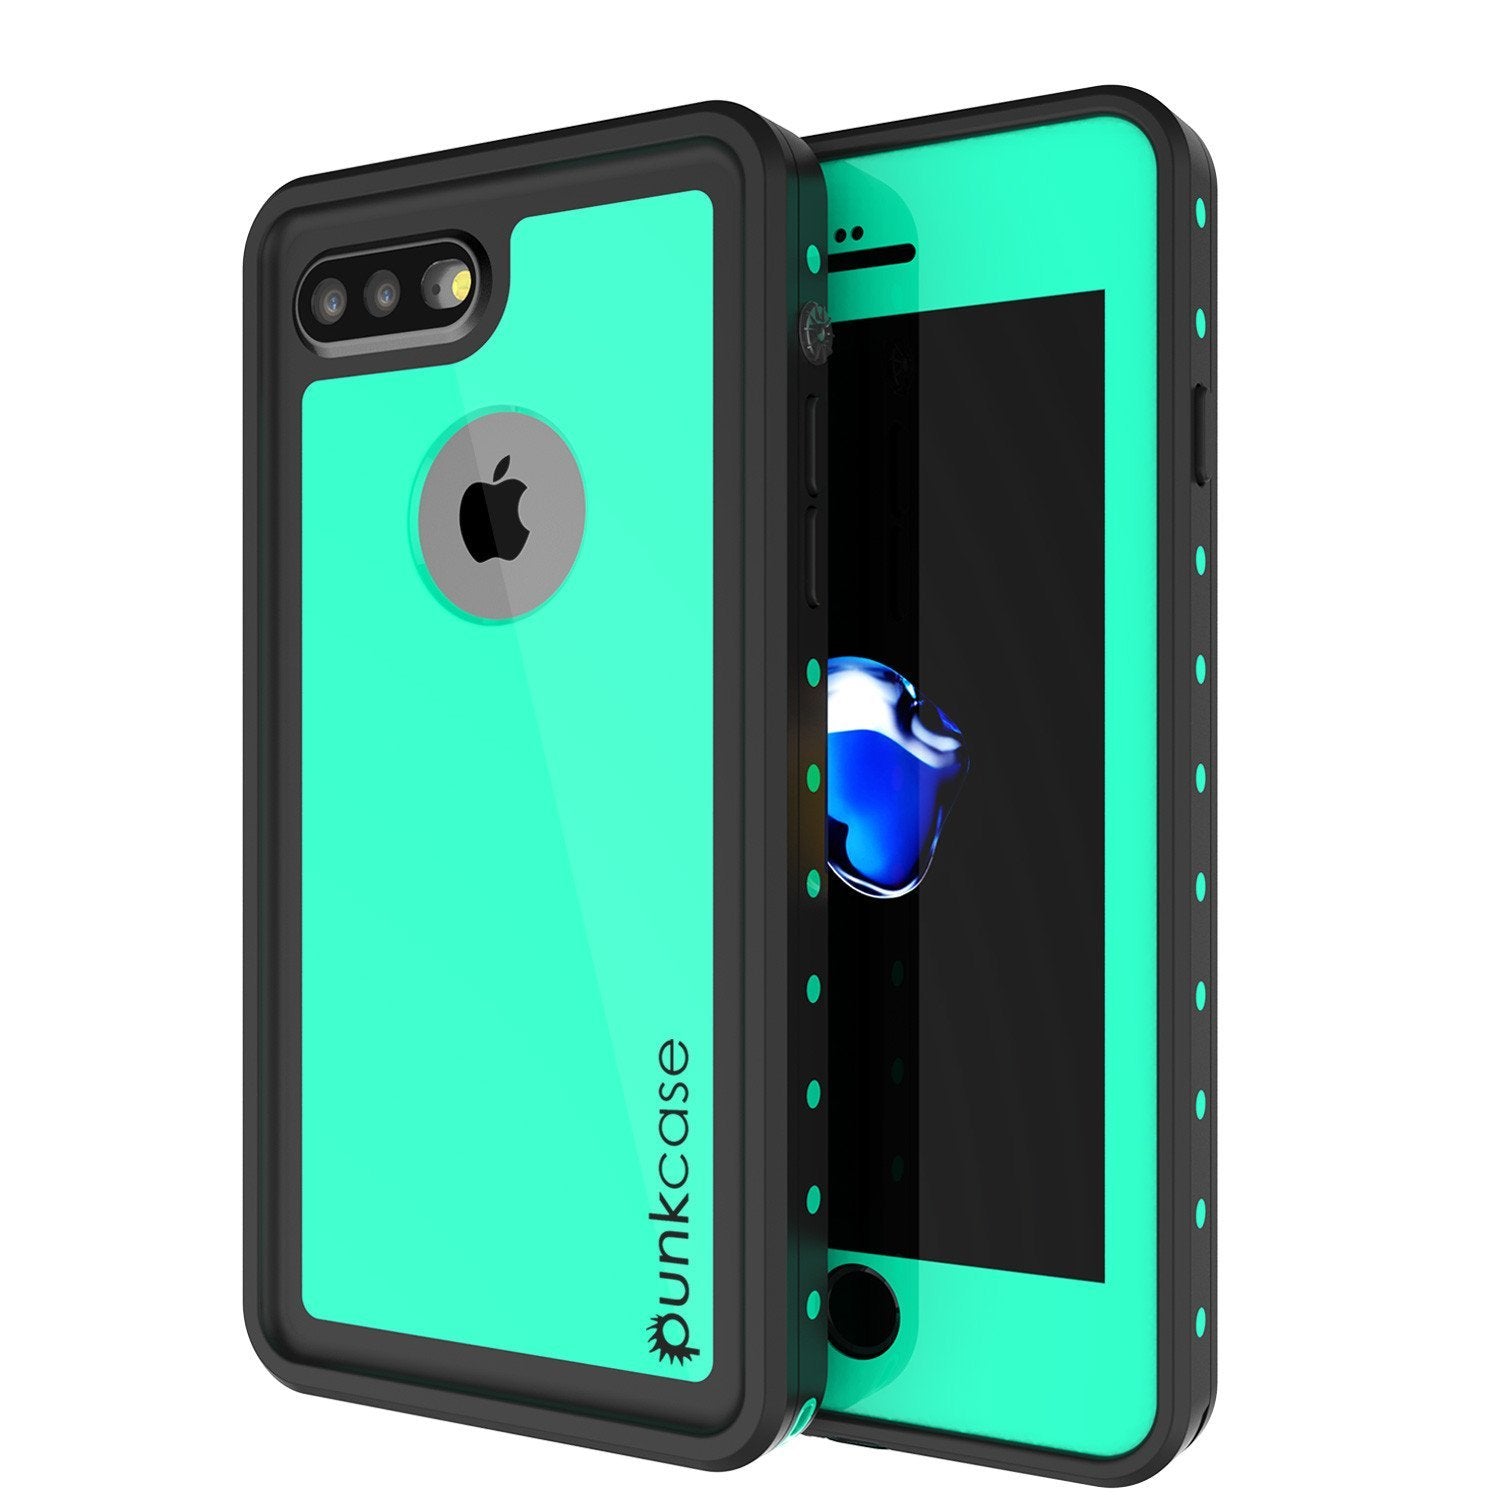 iPhone 8+ Plus Waterproof IP68 Case, Punkcase [Teal] [StudStar Series] [Slim Fit] [Dirtproof] - PunkCase NZ